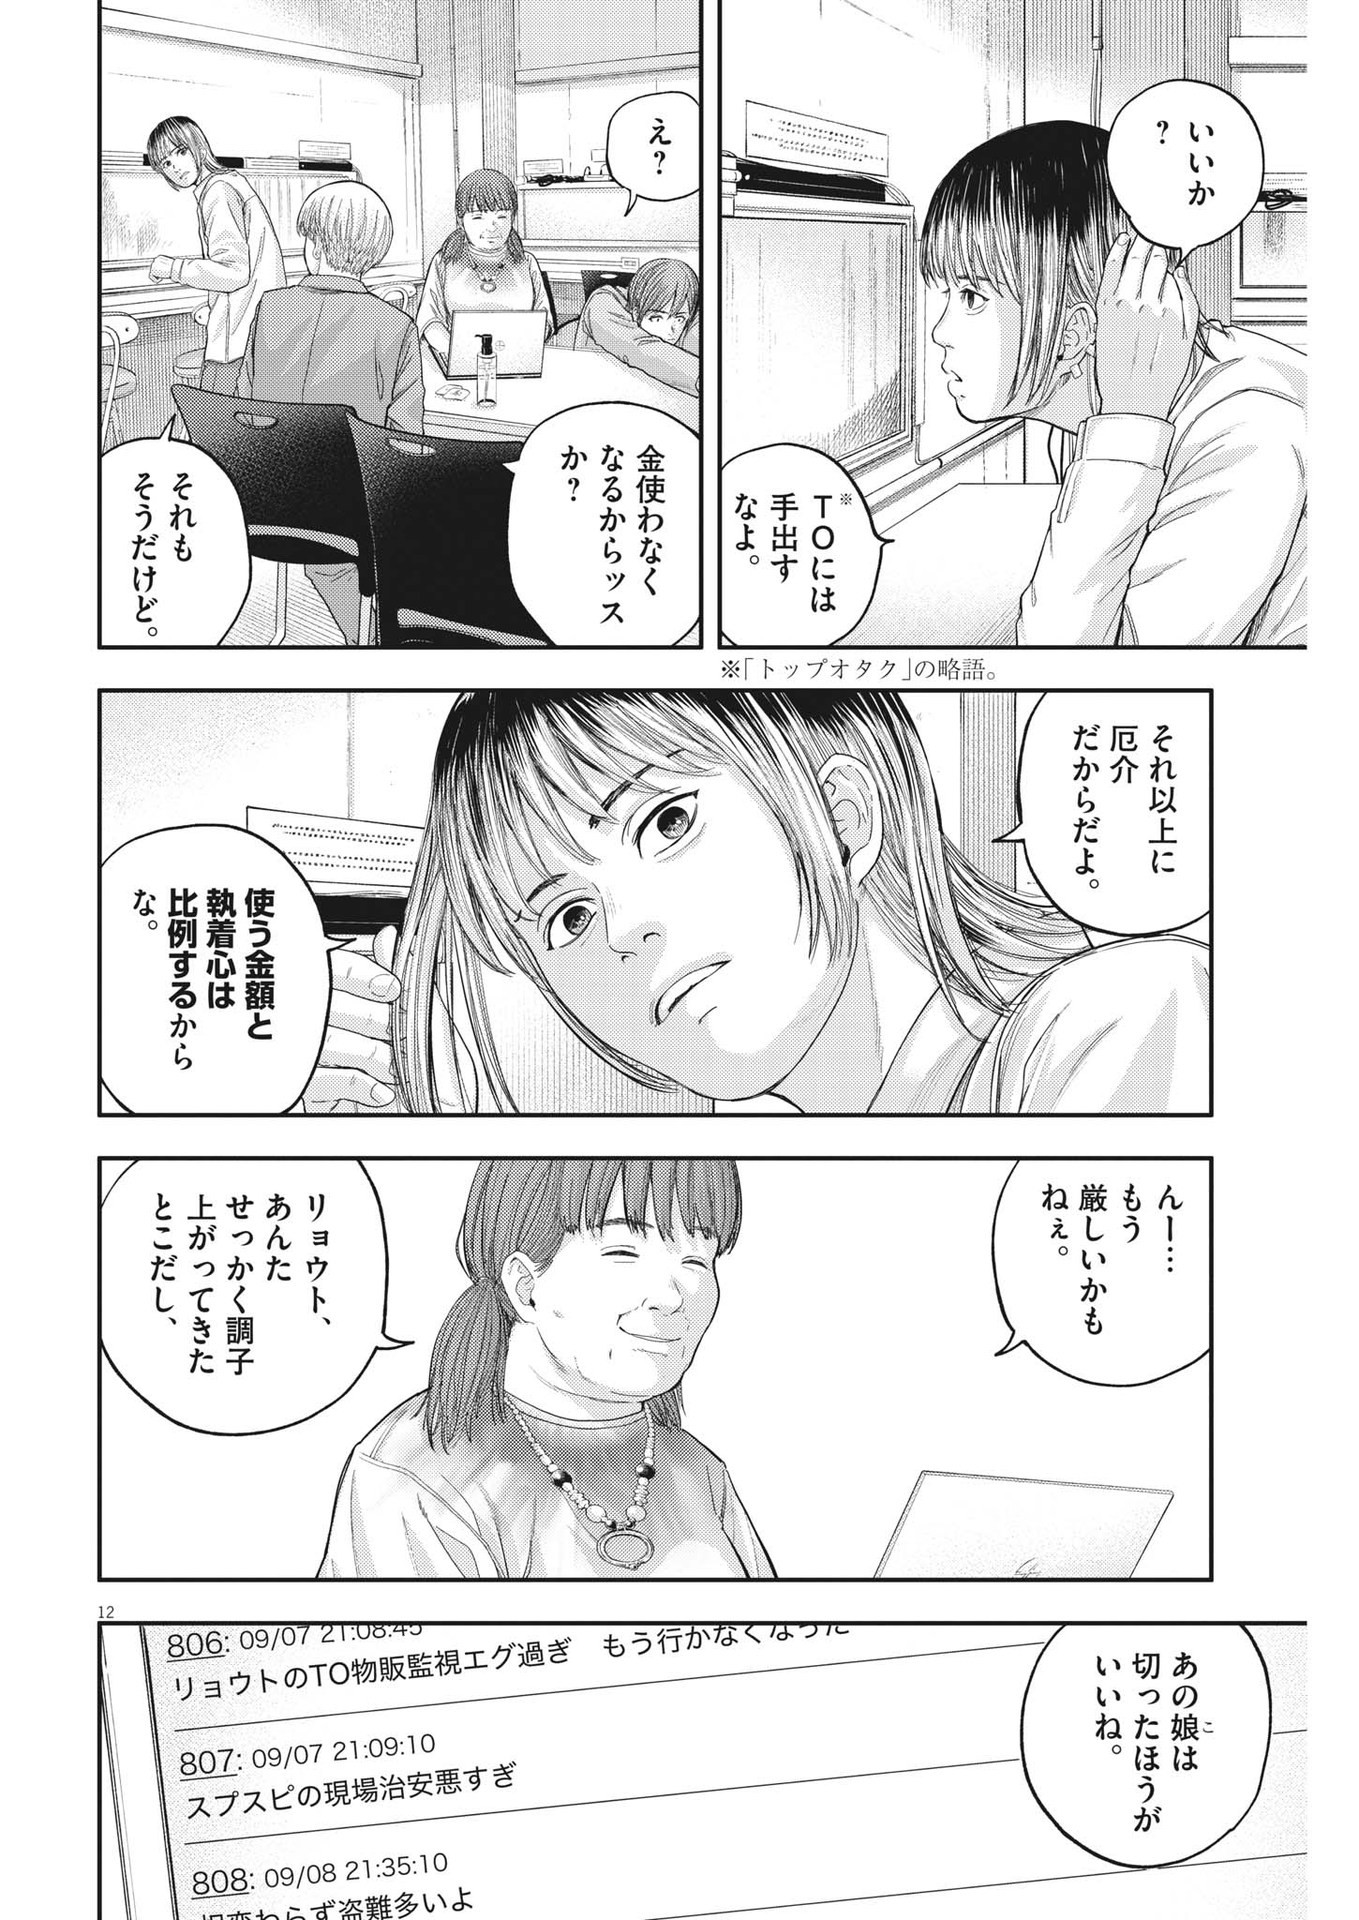 Yumenashi-sensei no Shinroshidou - Chapter 15 - Page 12